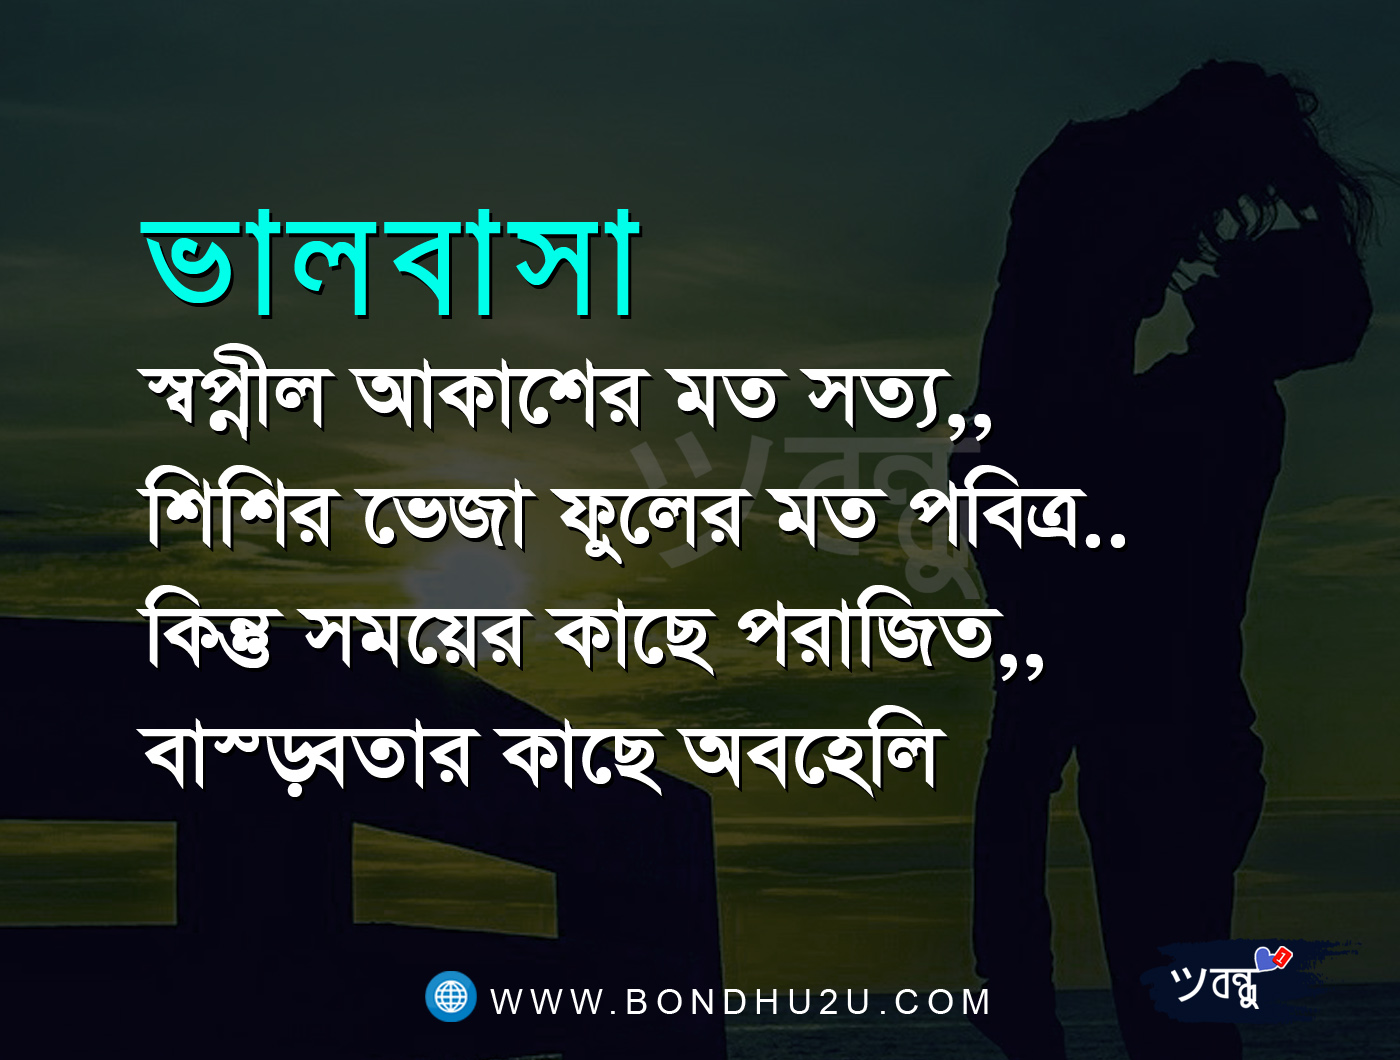 download di sfondi bangla kobita,testo,font,fotografia,didascalia della foto